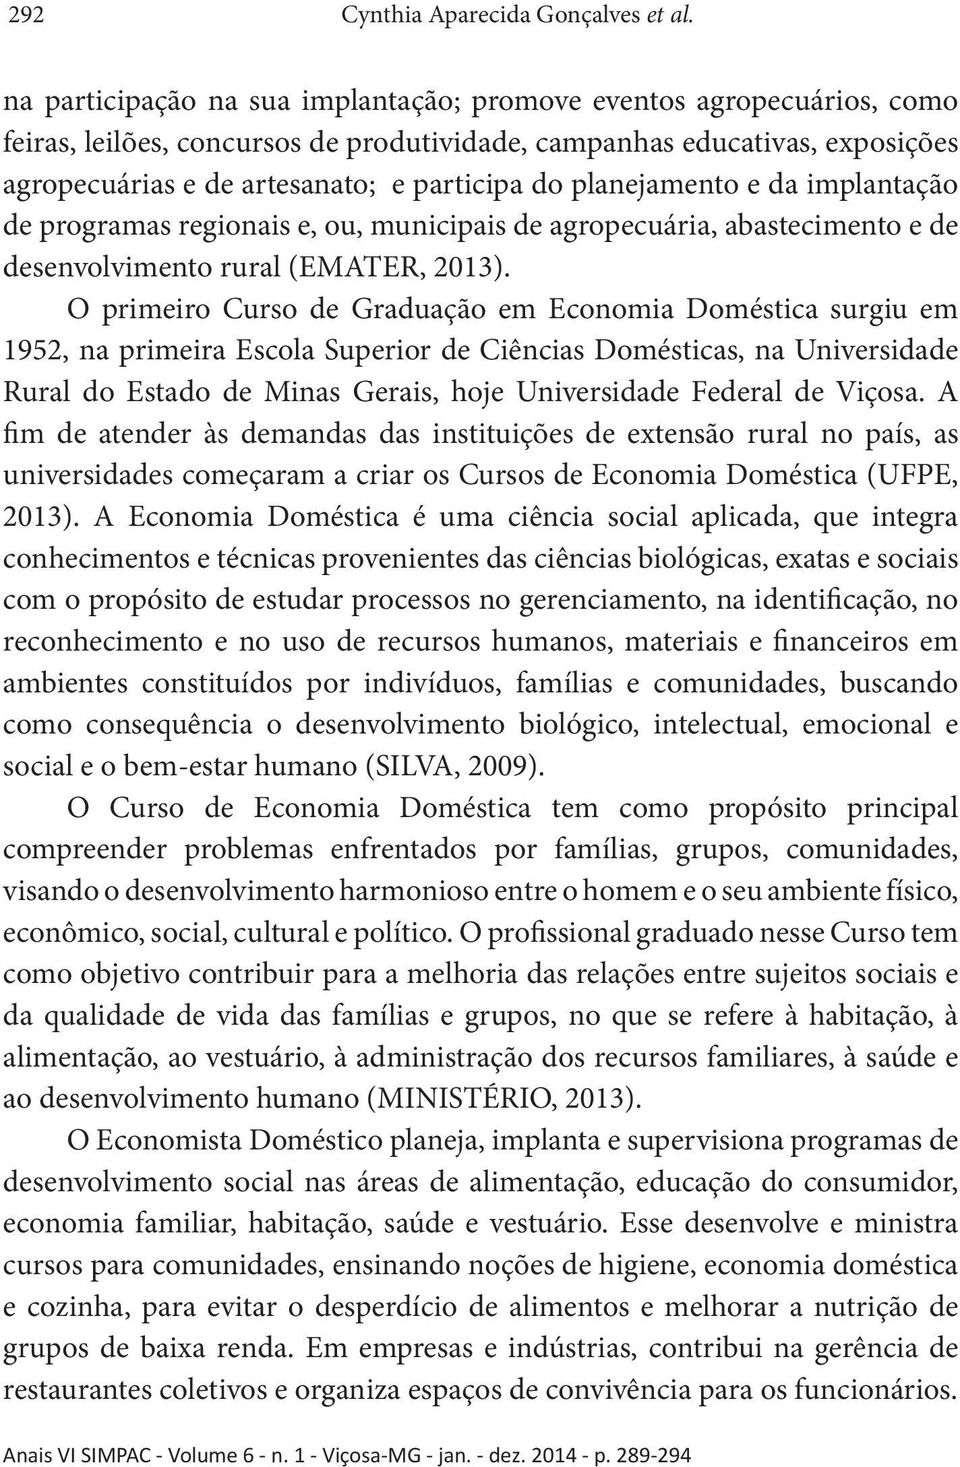 planejamento e da implantação de programas regionais e, ou, municipais de agropecuária, abastecimento e de desenvolvimento rural (EMATER, 2013).